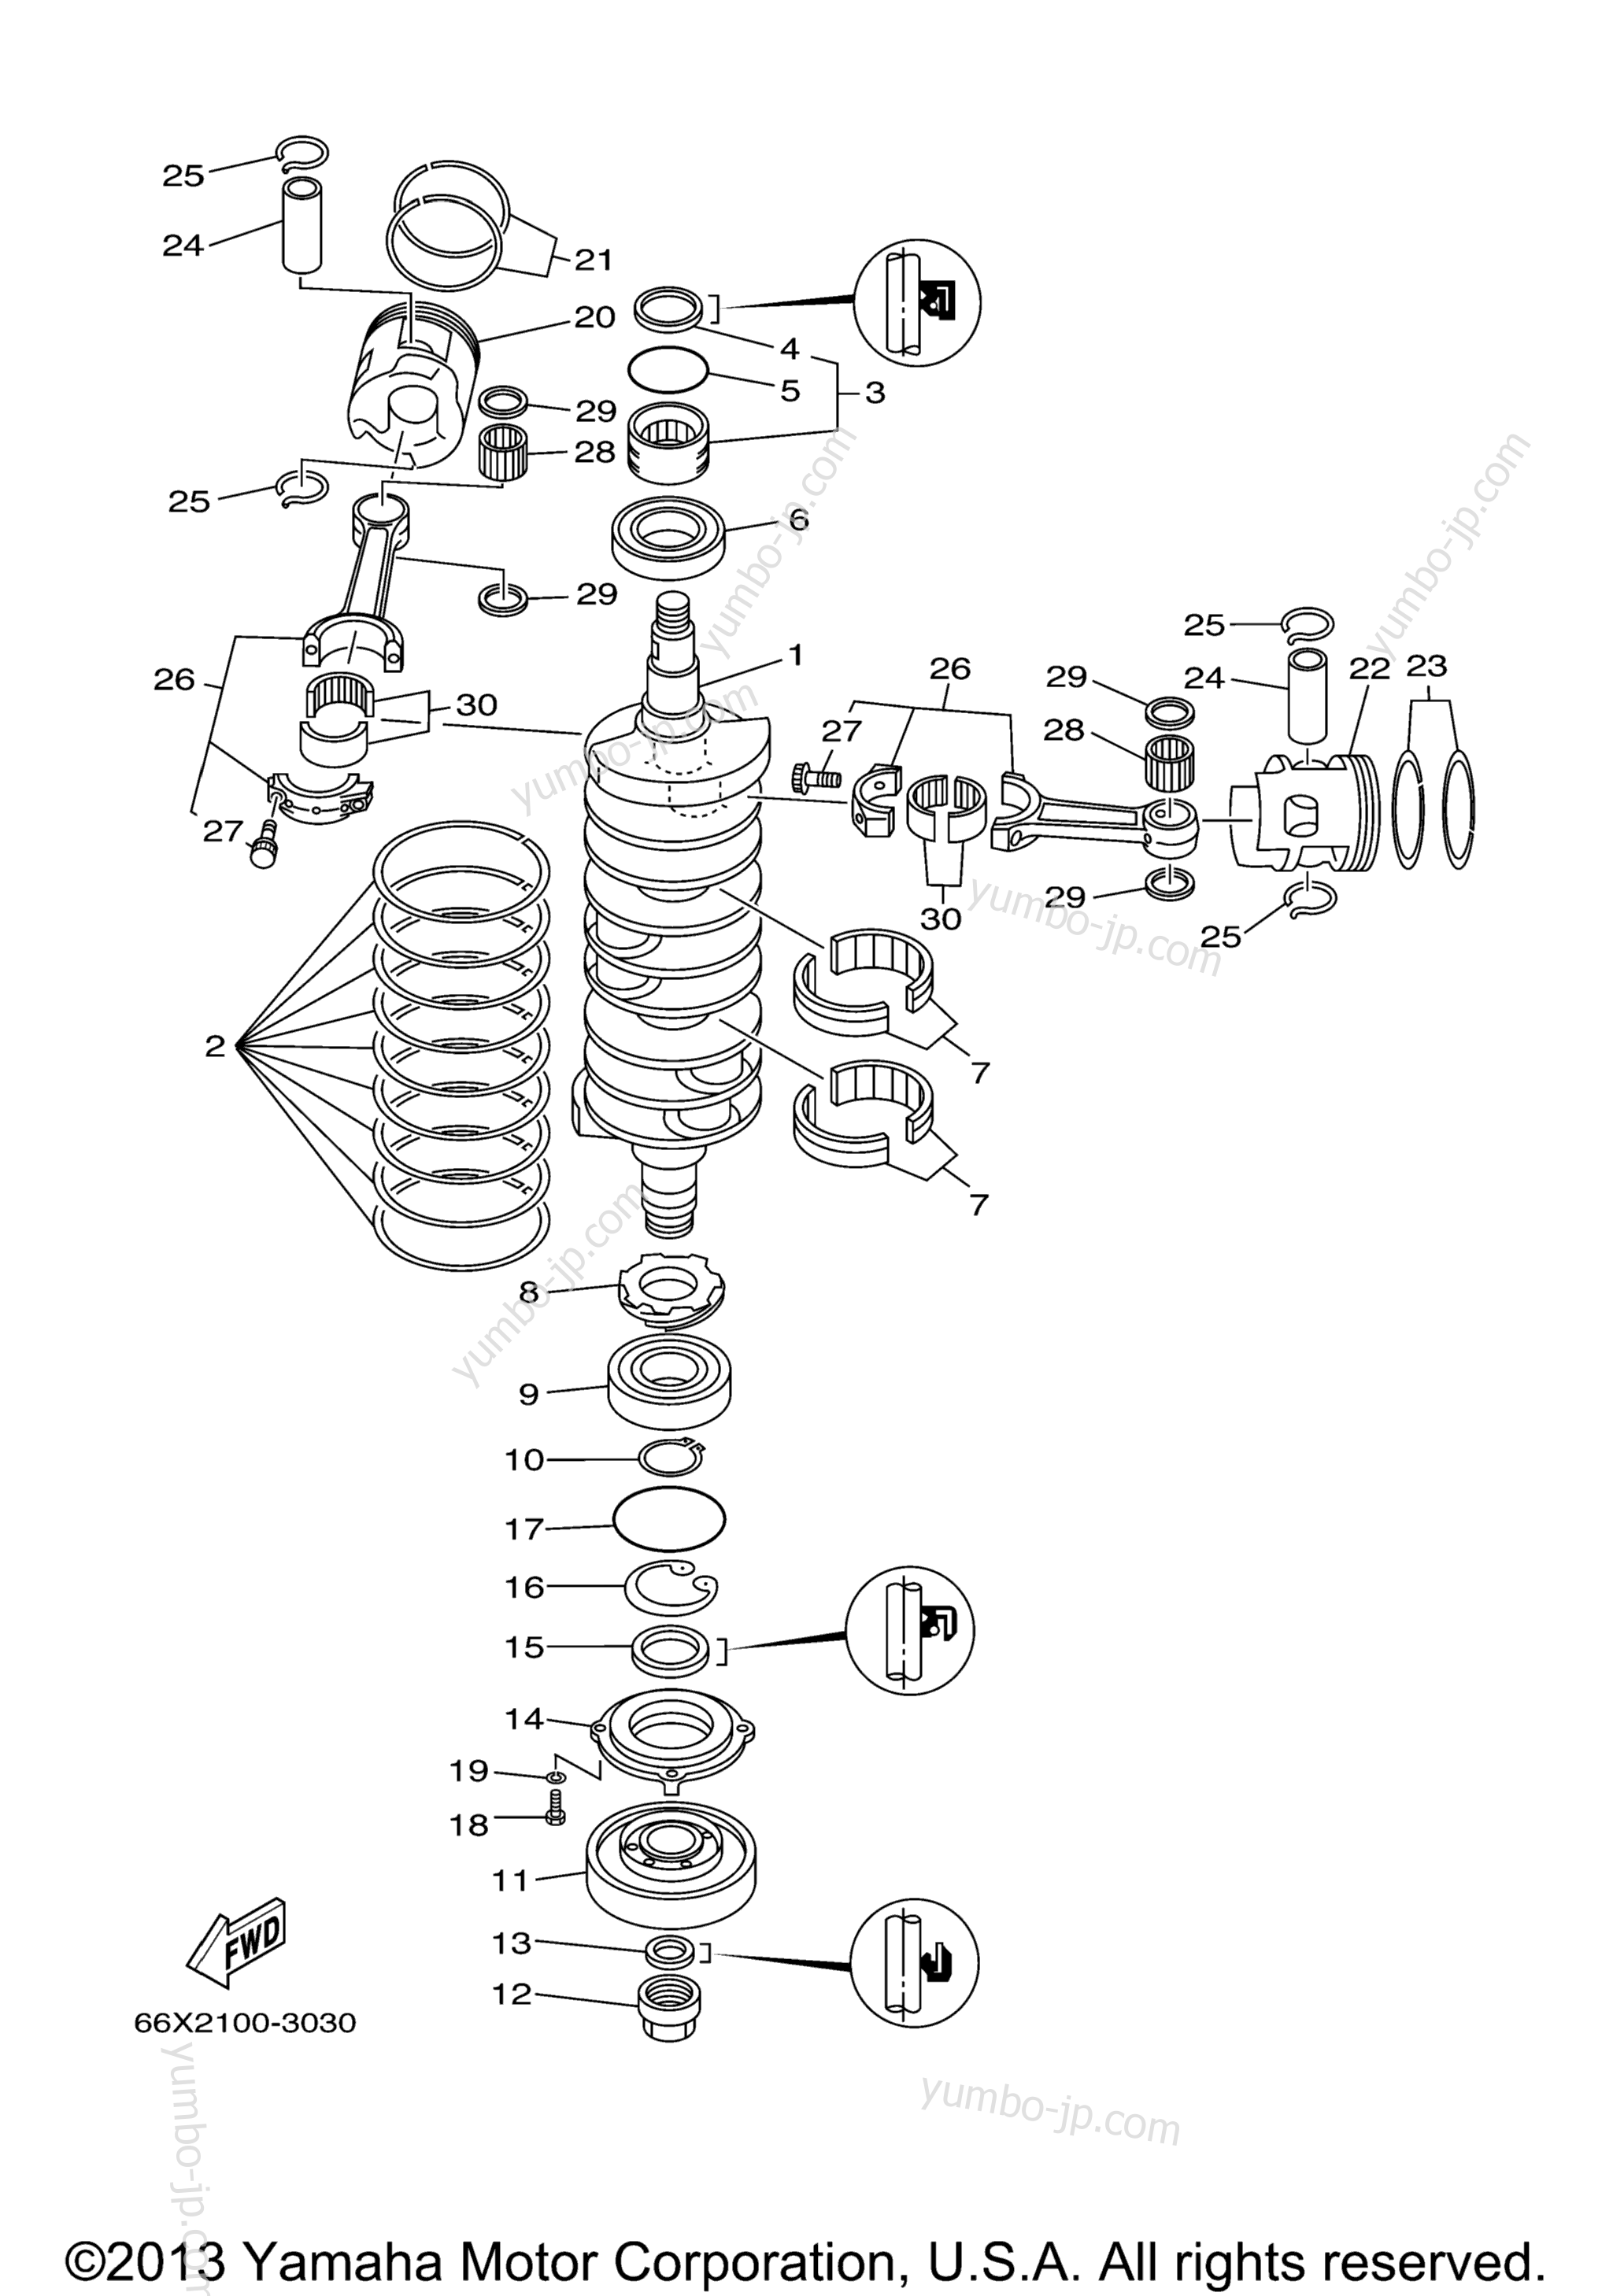 Коленвал и поршневая группа для лодочных моторов YAMAHA LX225_250TXRB (LX250TXRB) 2003 г.